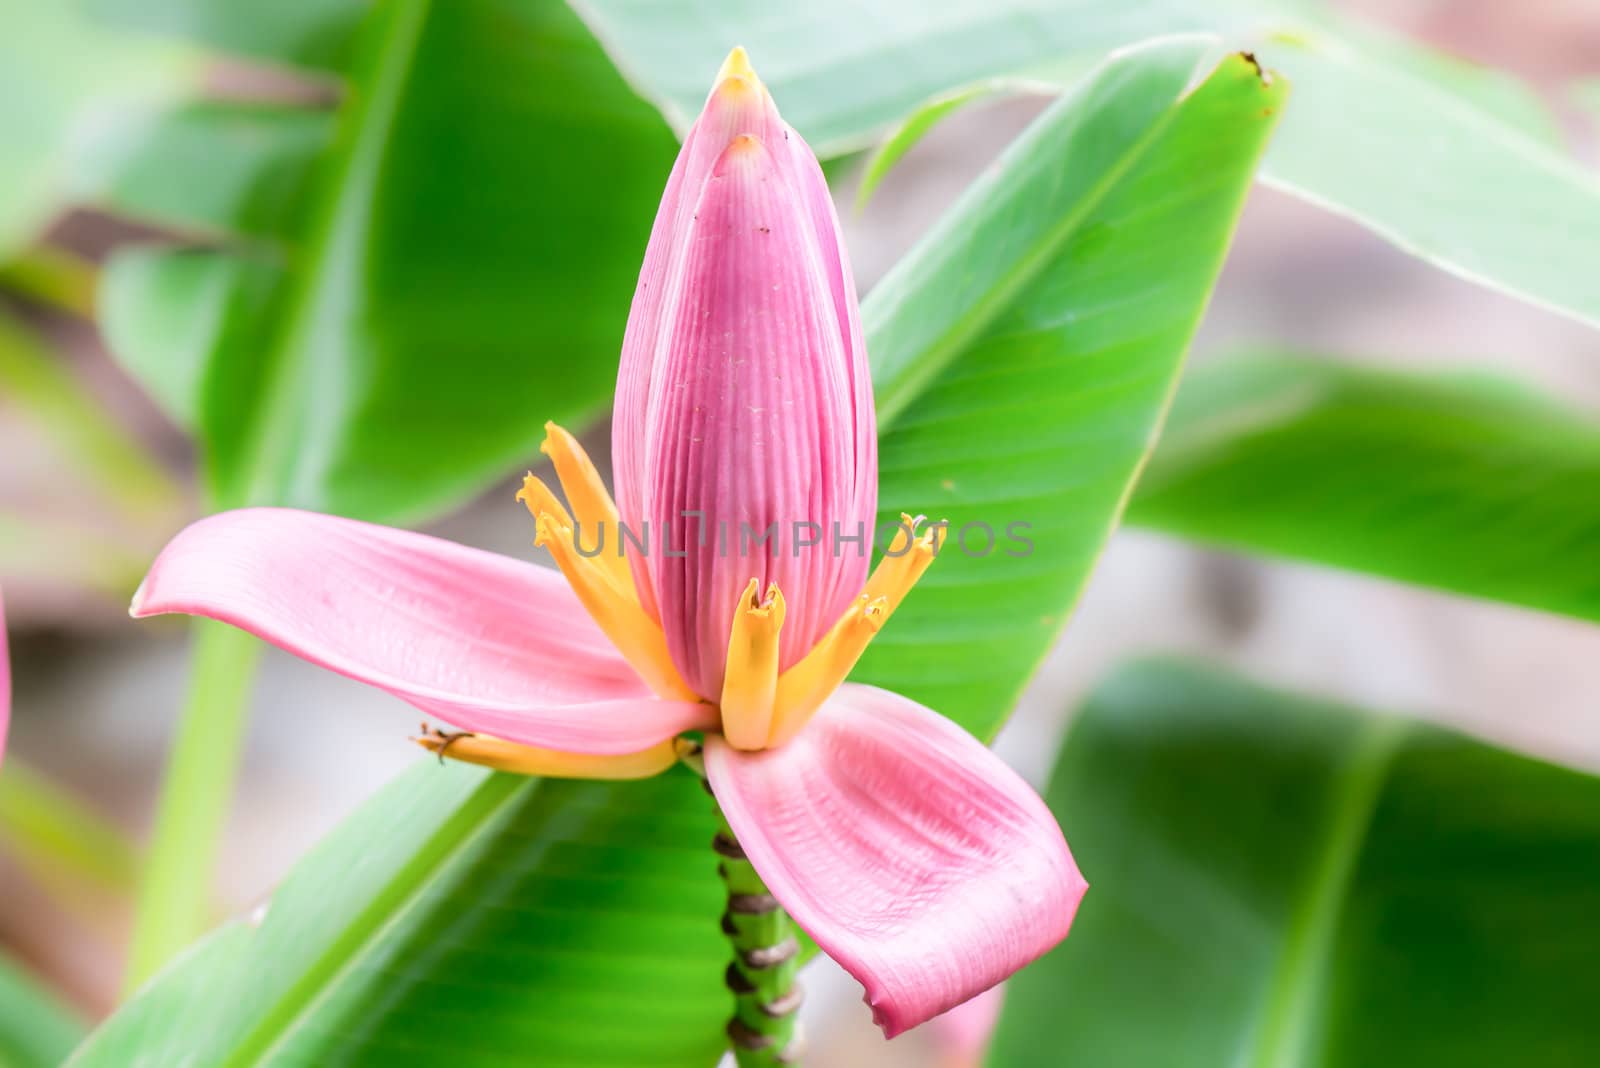 flower of pink musa ornata or flowering banana, lotus liked